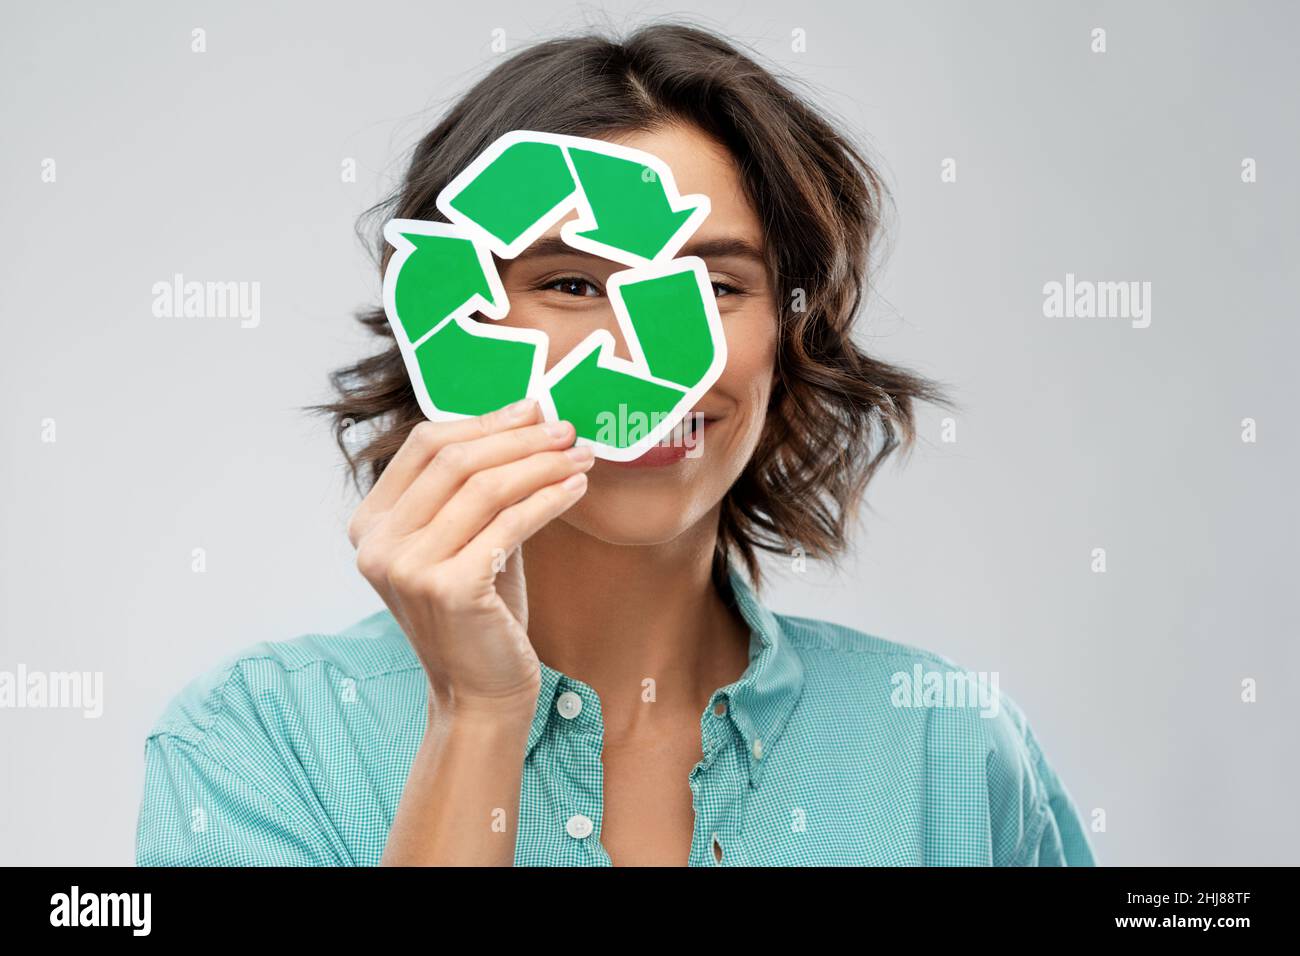 donna sorridente che guarda attraverso il segno verde di riciclaggio Foto Stock